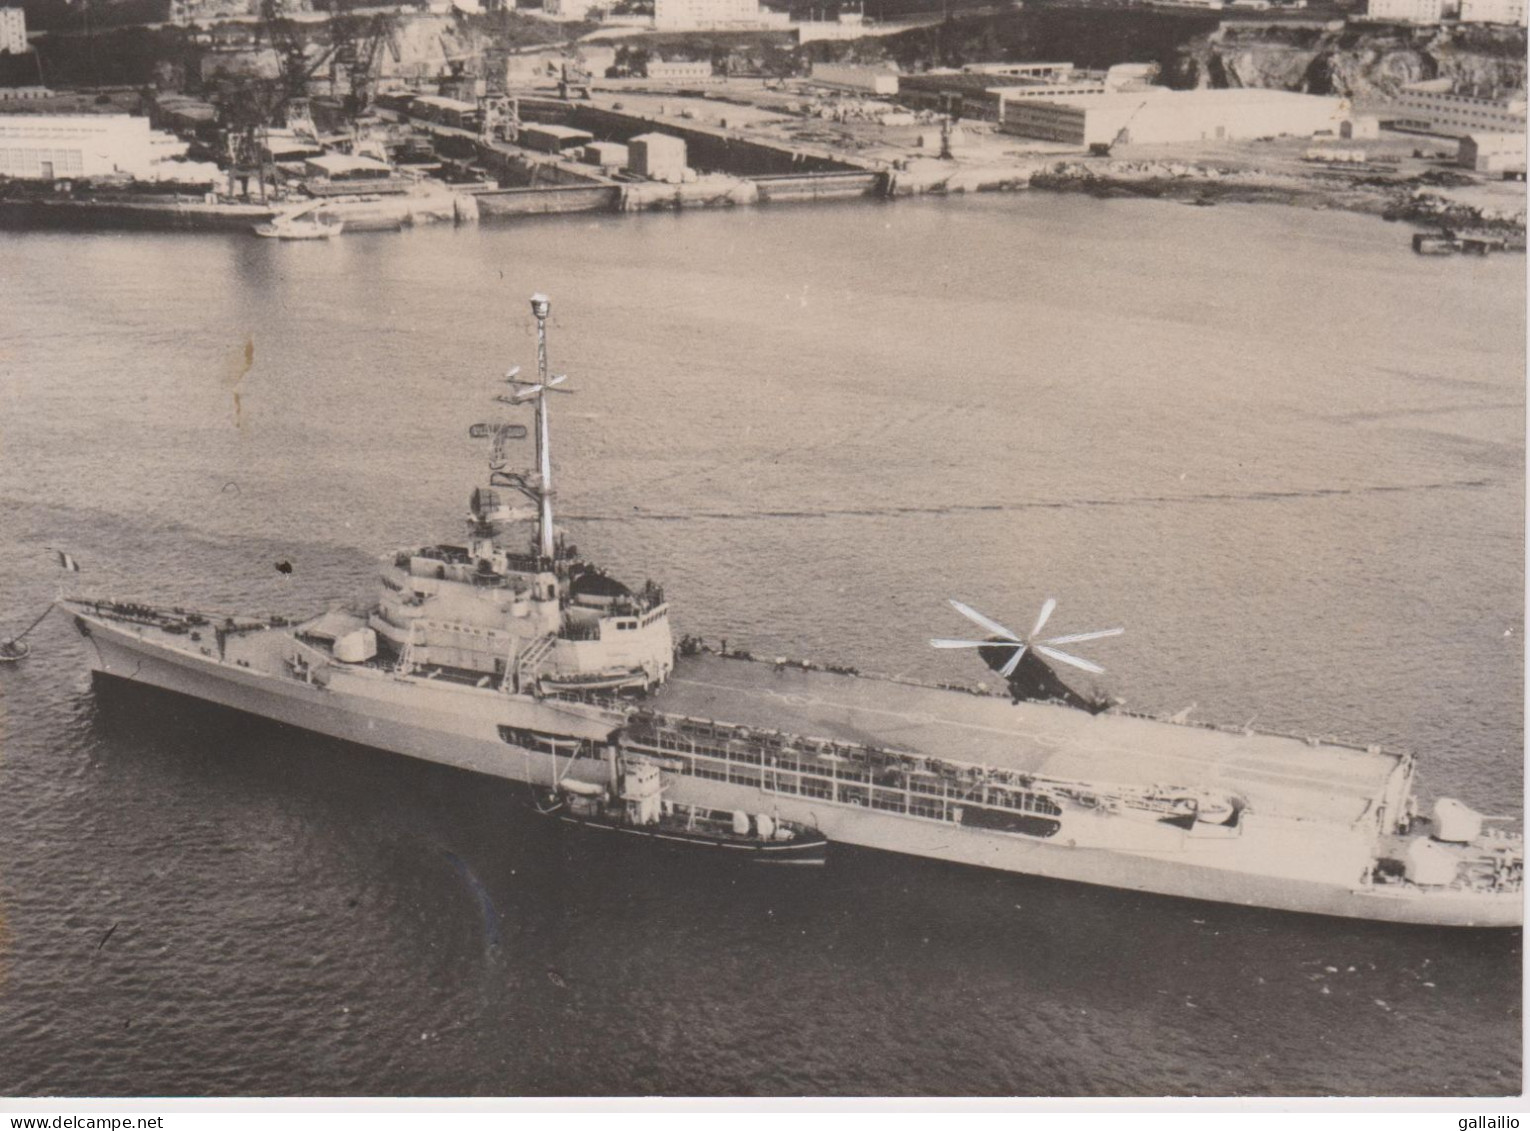 PHOTO PRESSE PREMIERE CROISIERE POUR LA NOUVELLE JEANNE OCTOBRE 1964 FORMAT 13 X 18 CMS - Schiffe